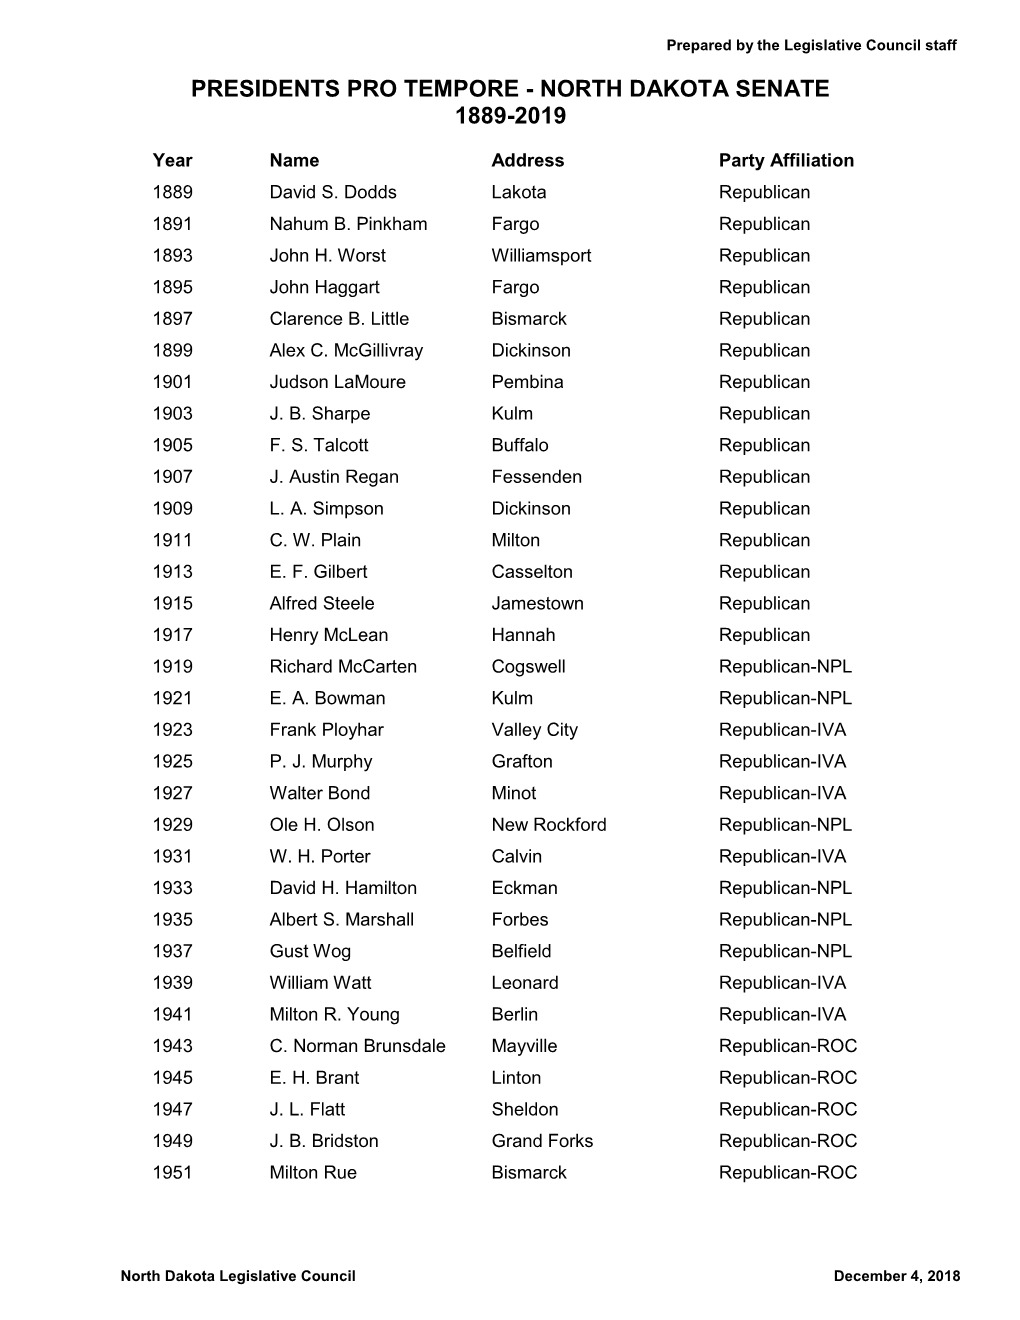 North Dakota Senate Presidents Pro Tempore 1889-2019